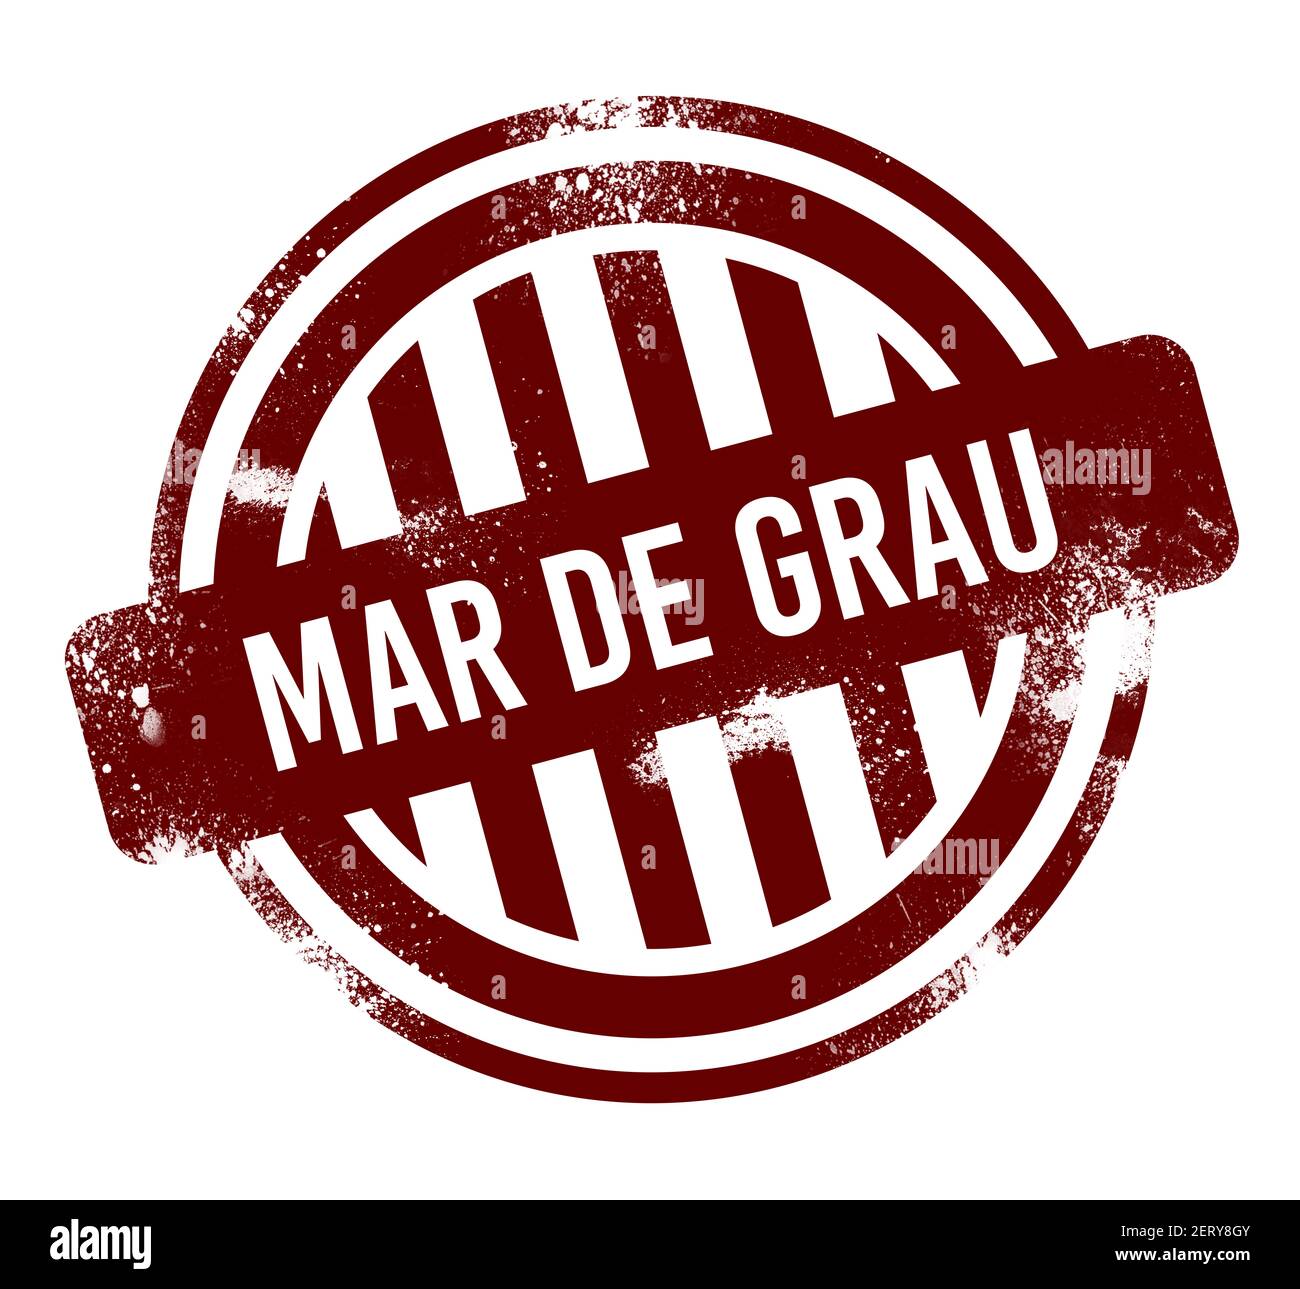 Mar de Grau - red round grunge button, stamp Stock Photo